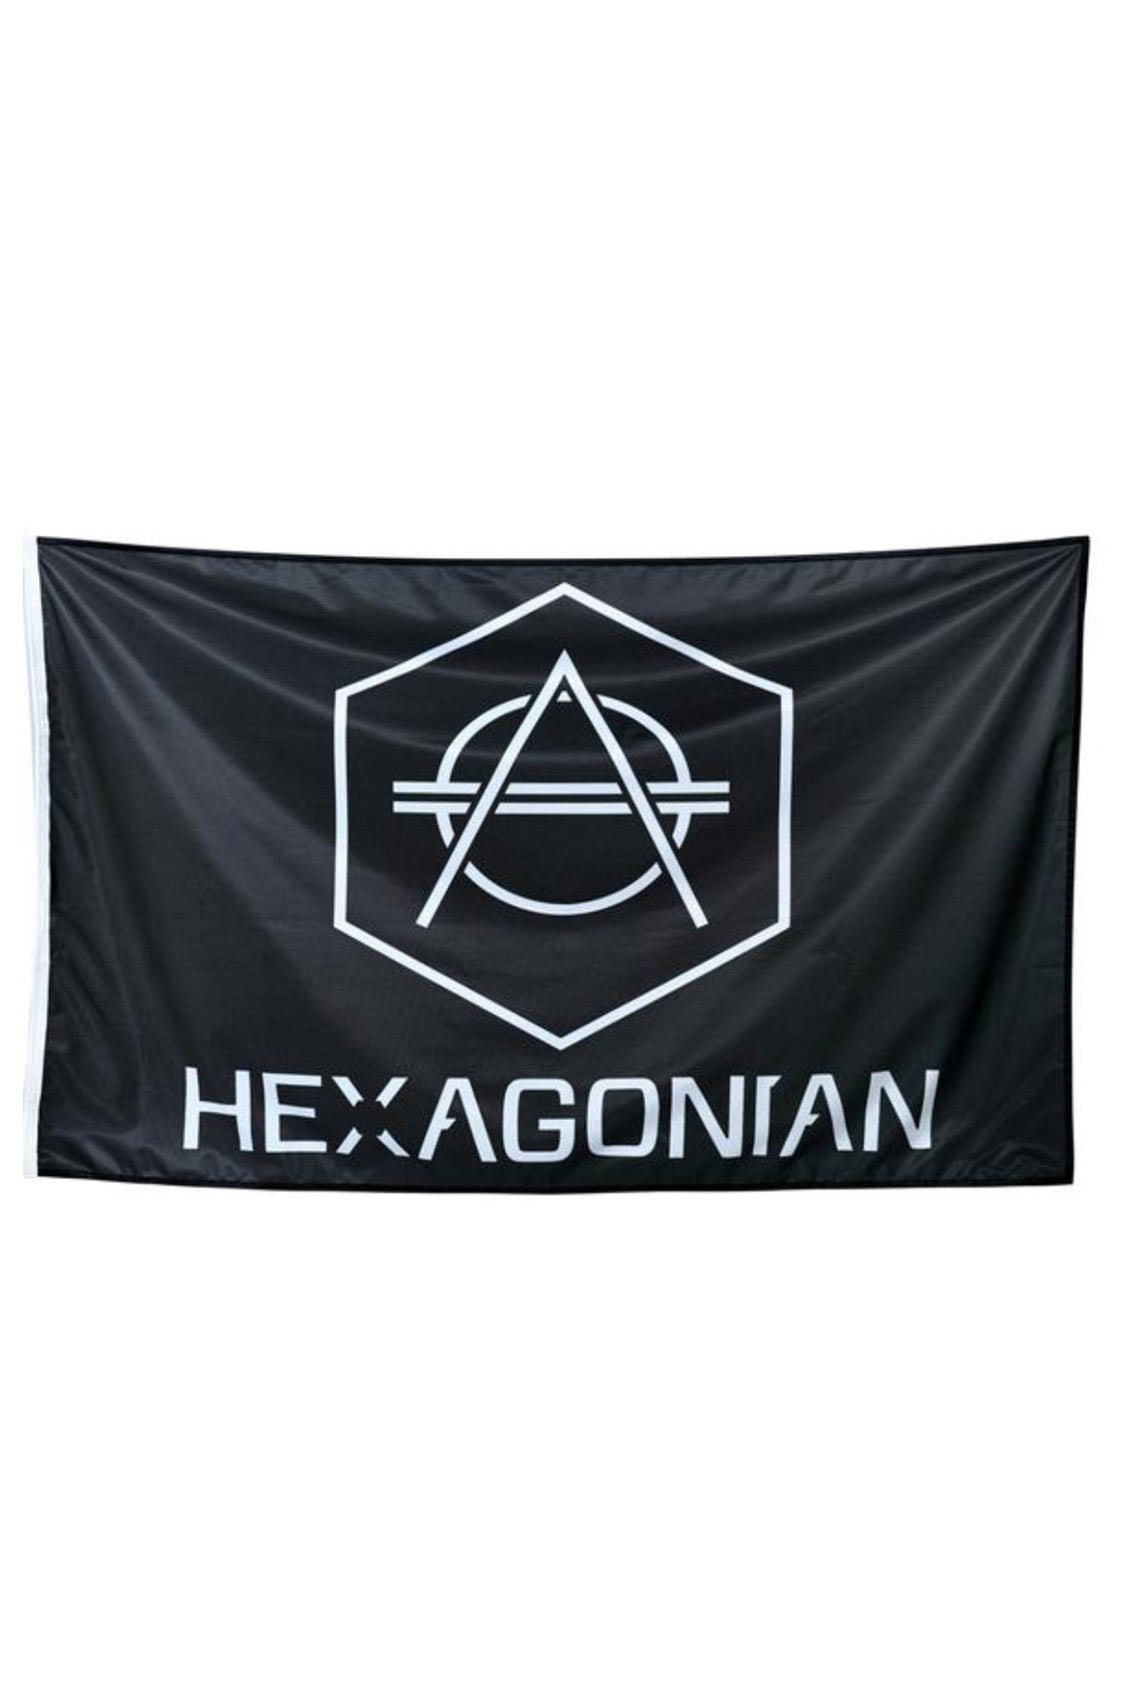 Hexagonian flag - HEXAGON - Don Diablo - Hexagon